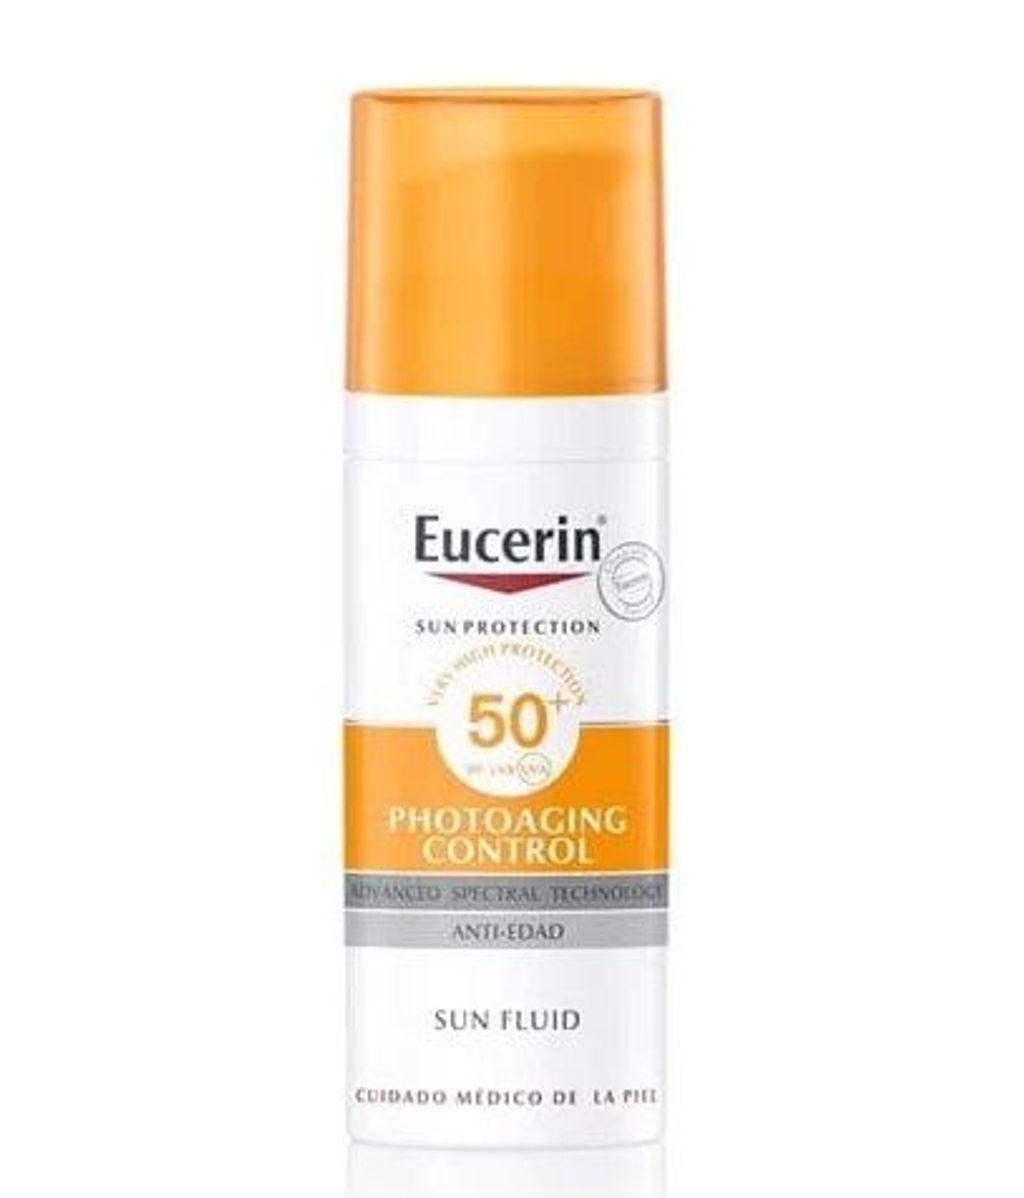 Sun Face Photoaging Control Fluid FPS 50+ de Eucerin